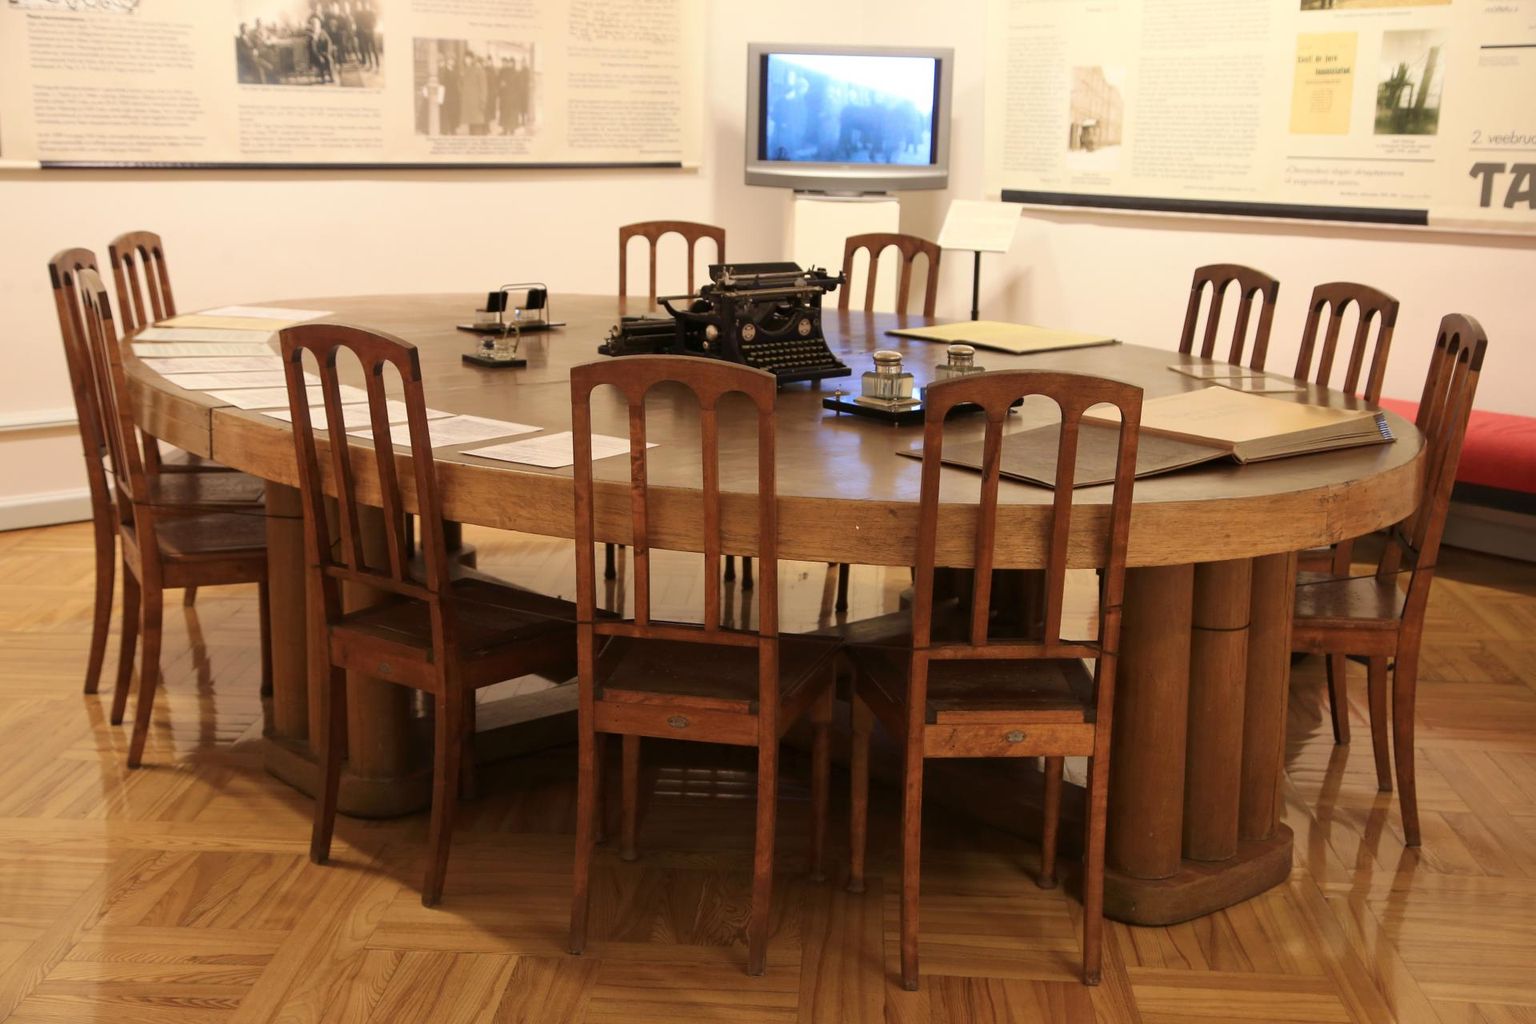 Tartu linnamuuseumis eksponeeritav laud, mille taga sõlmiti Tartu rahuleping.